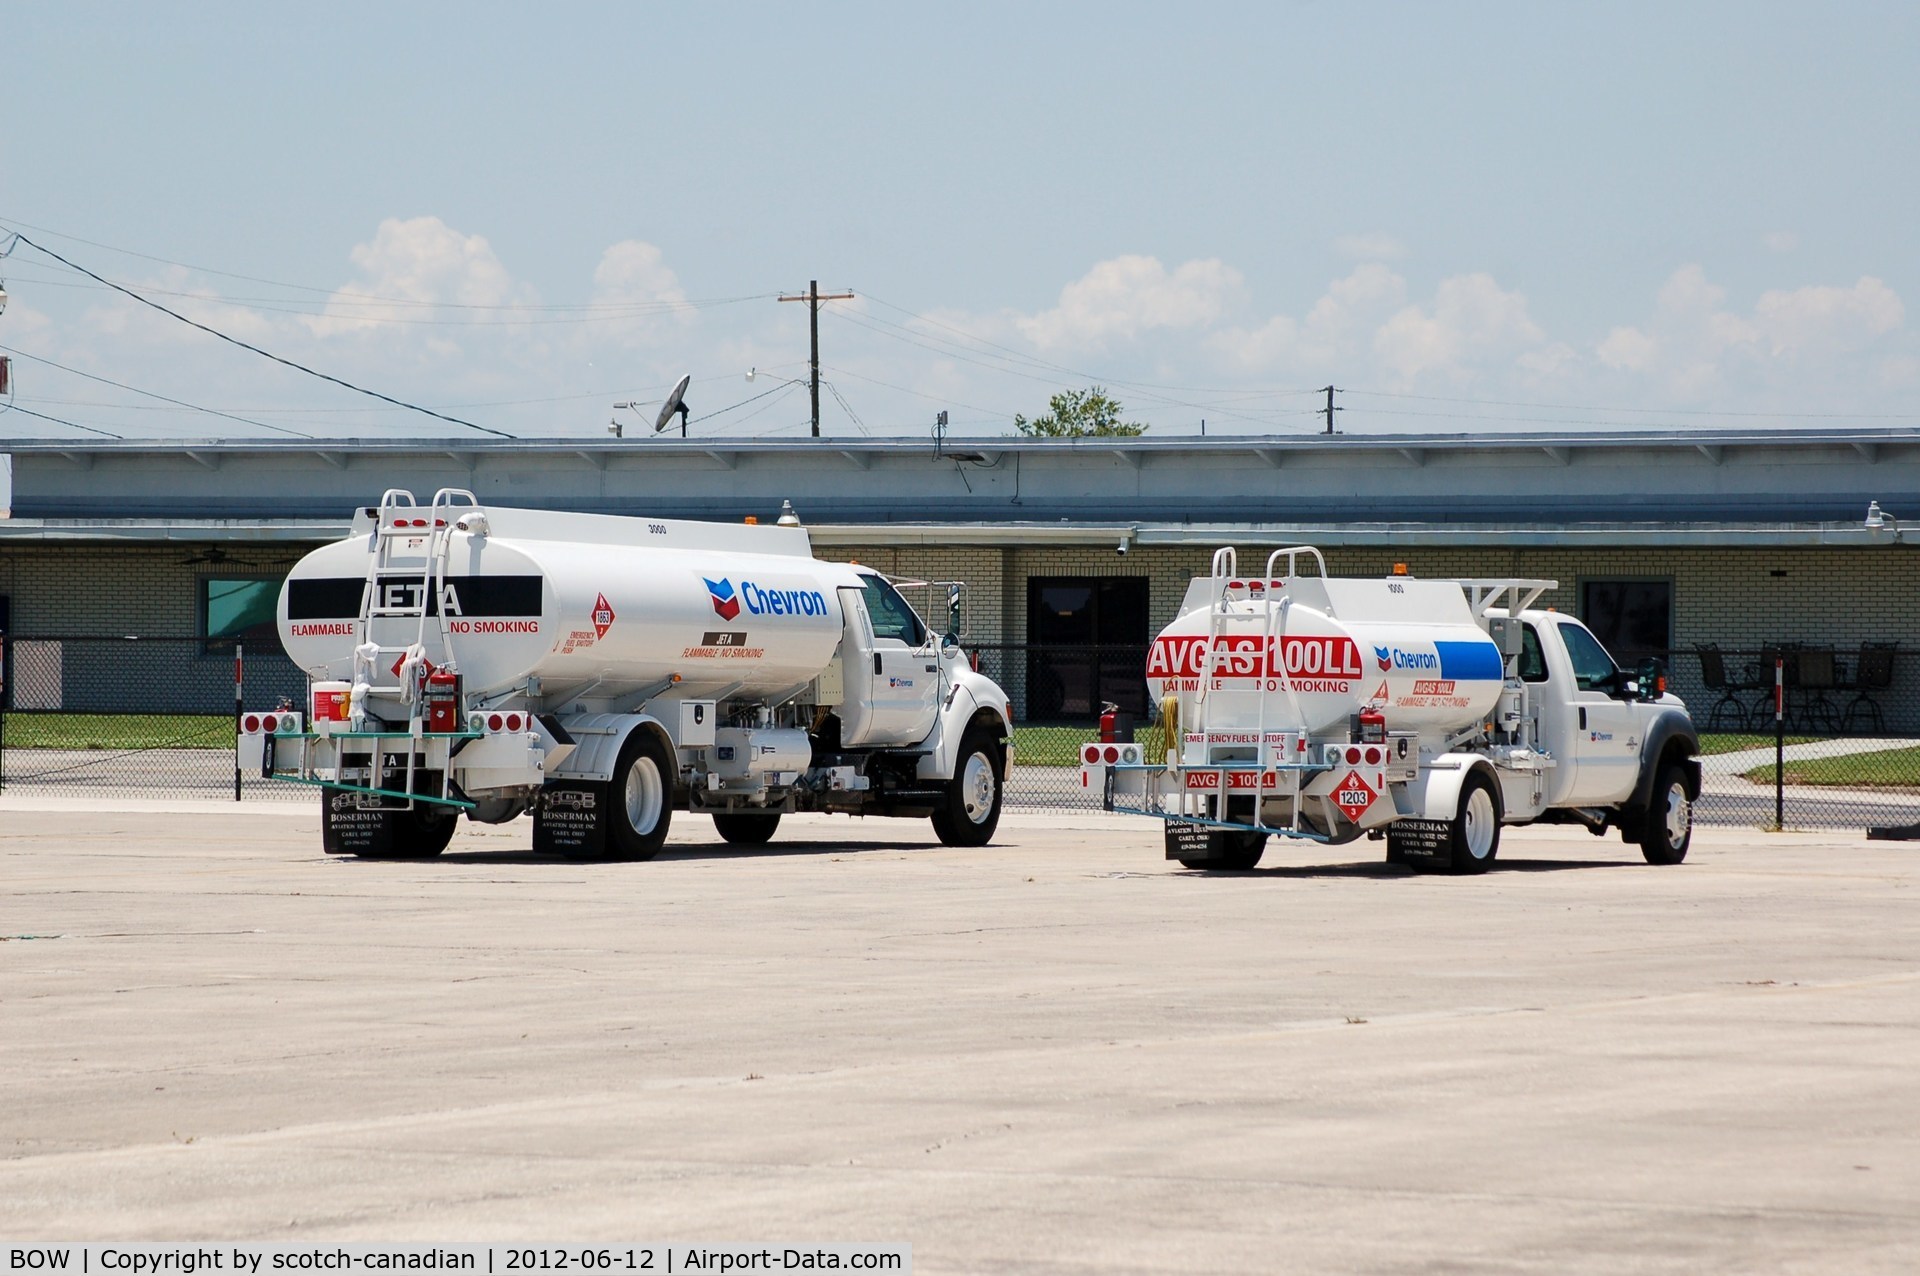 Bartow Municipal Airport (BOW) - Fuel Trucks at Bartow Municipal Airport, Bartow, FL